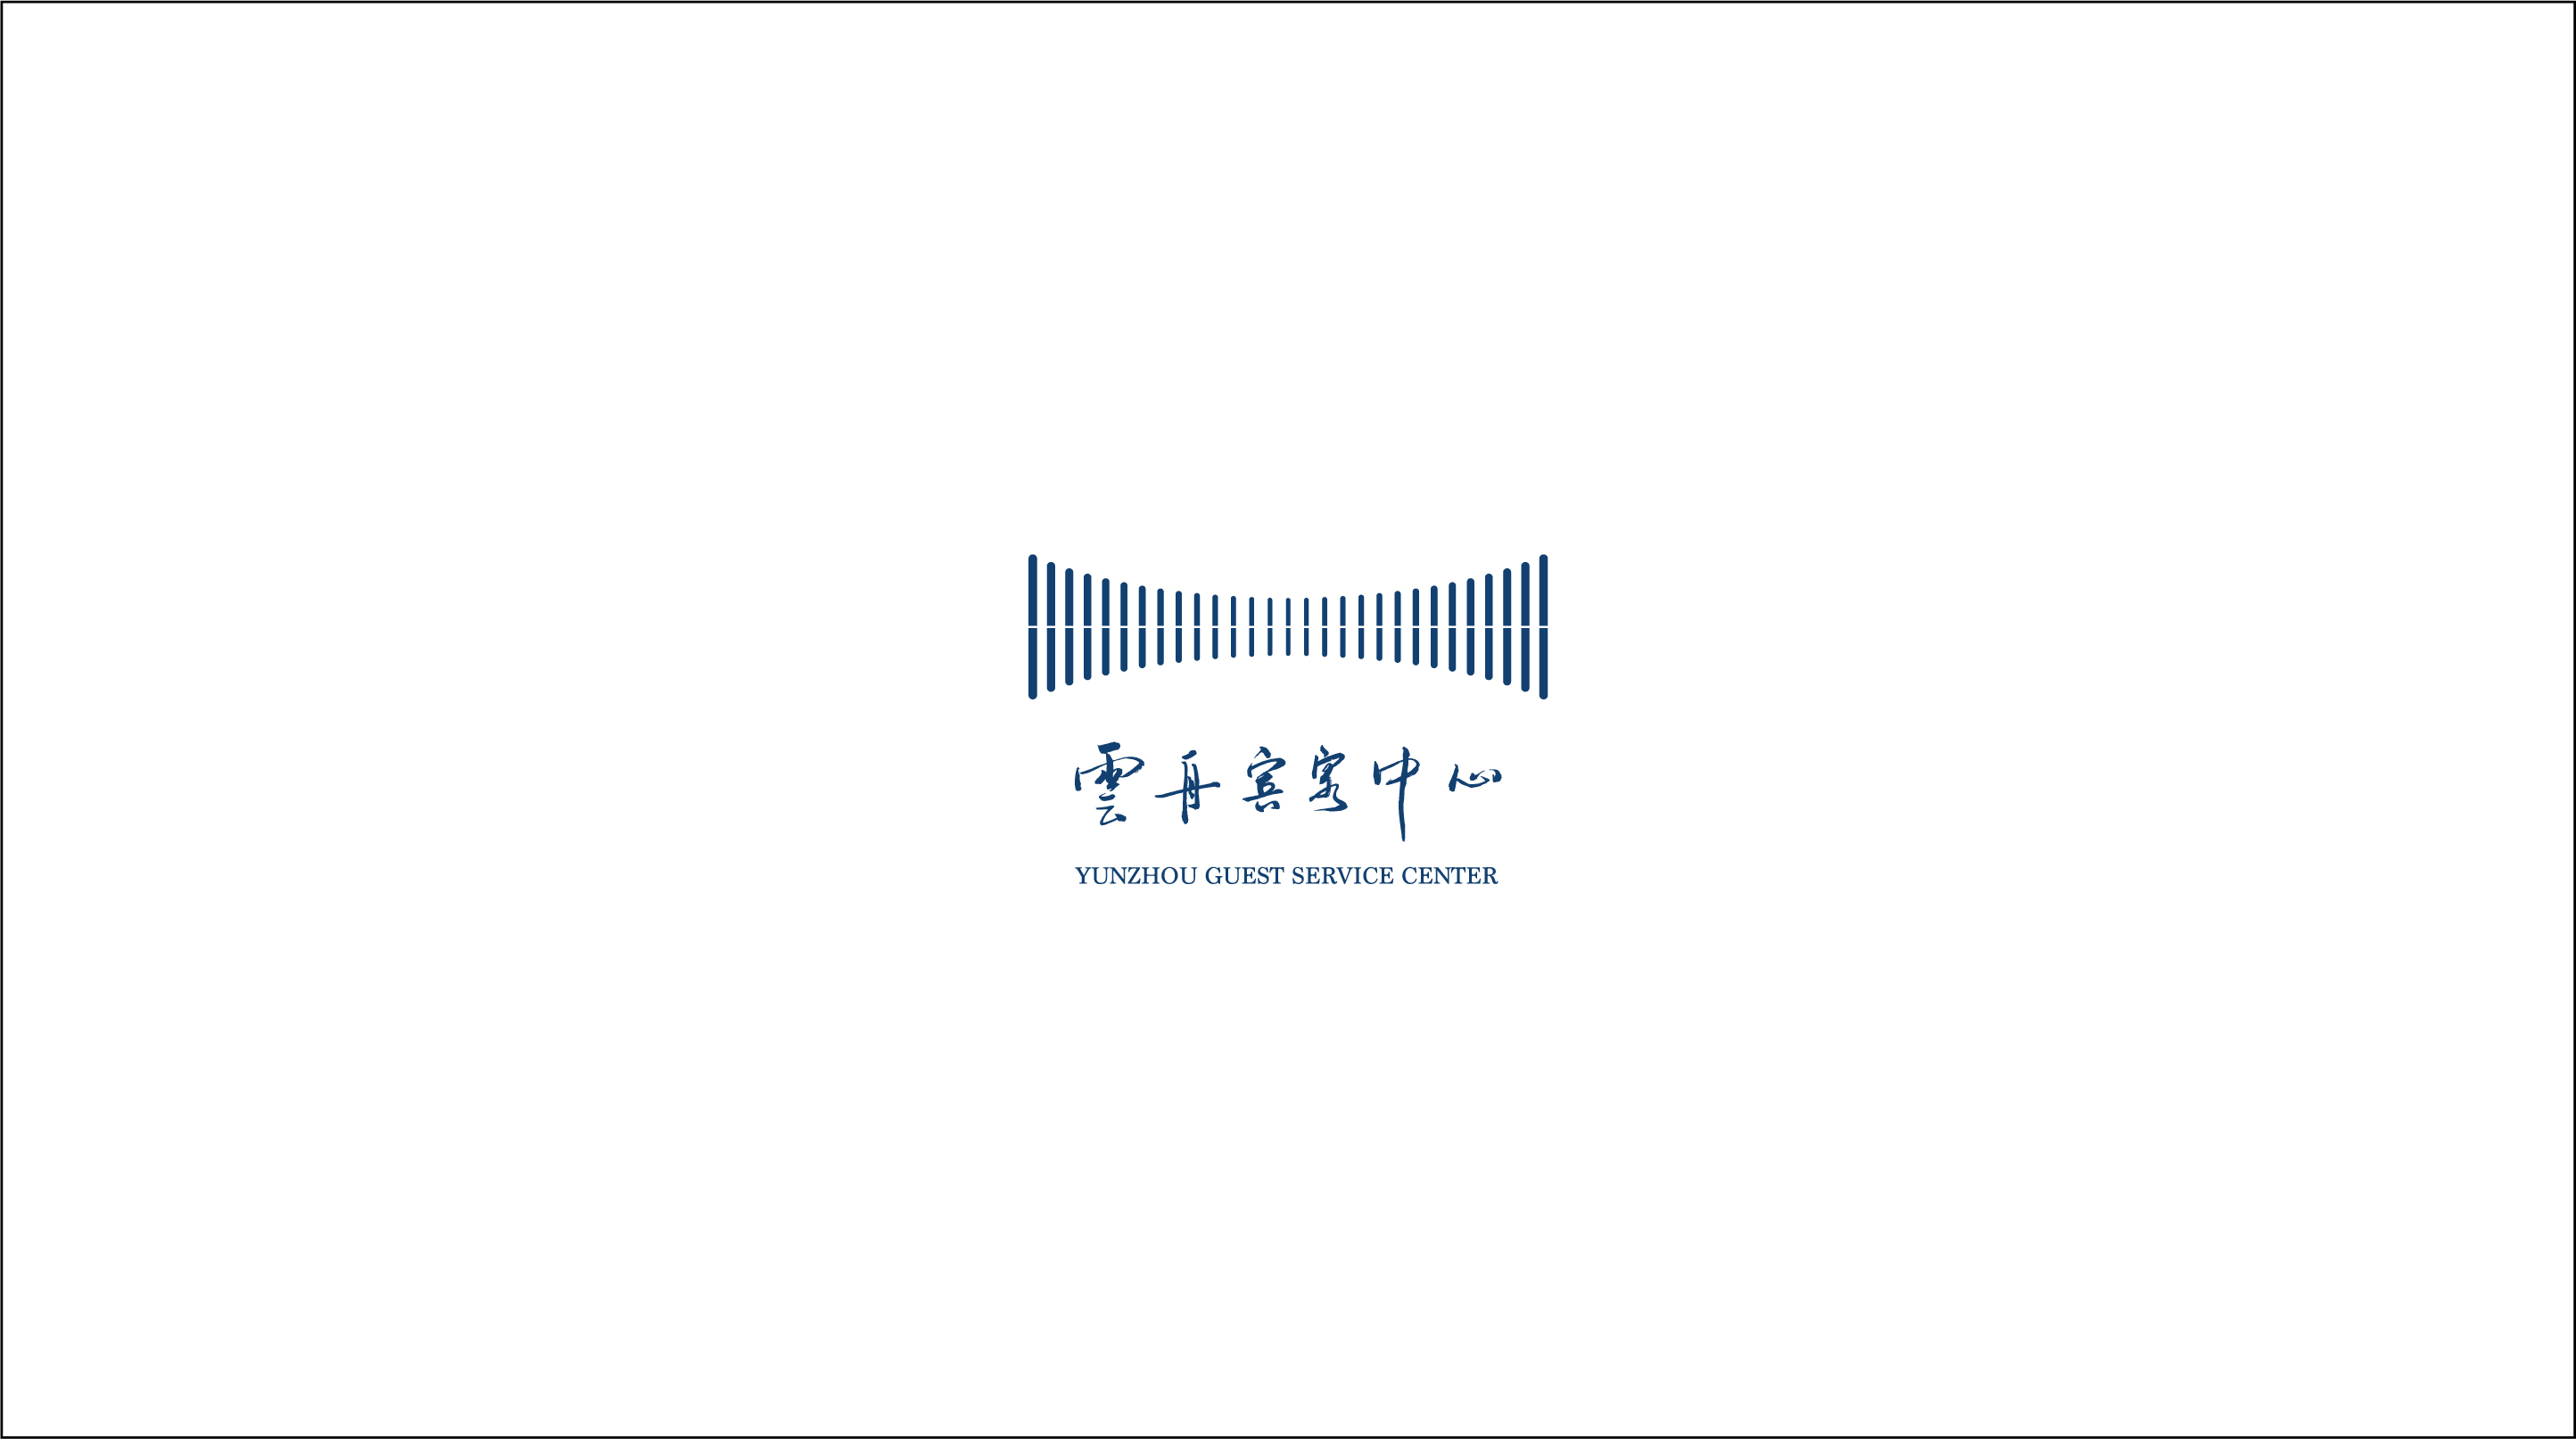 第五届世界互联网大会云舟宾客中心logo设计